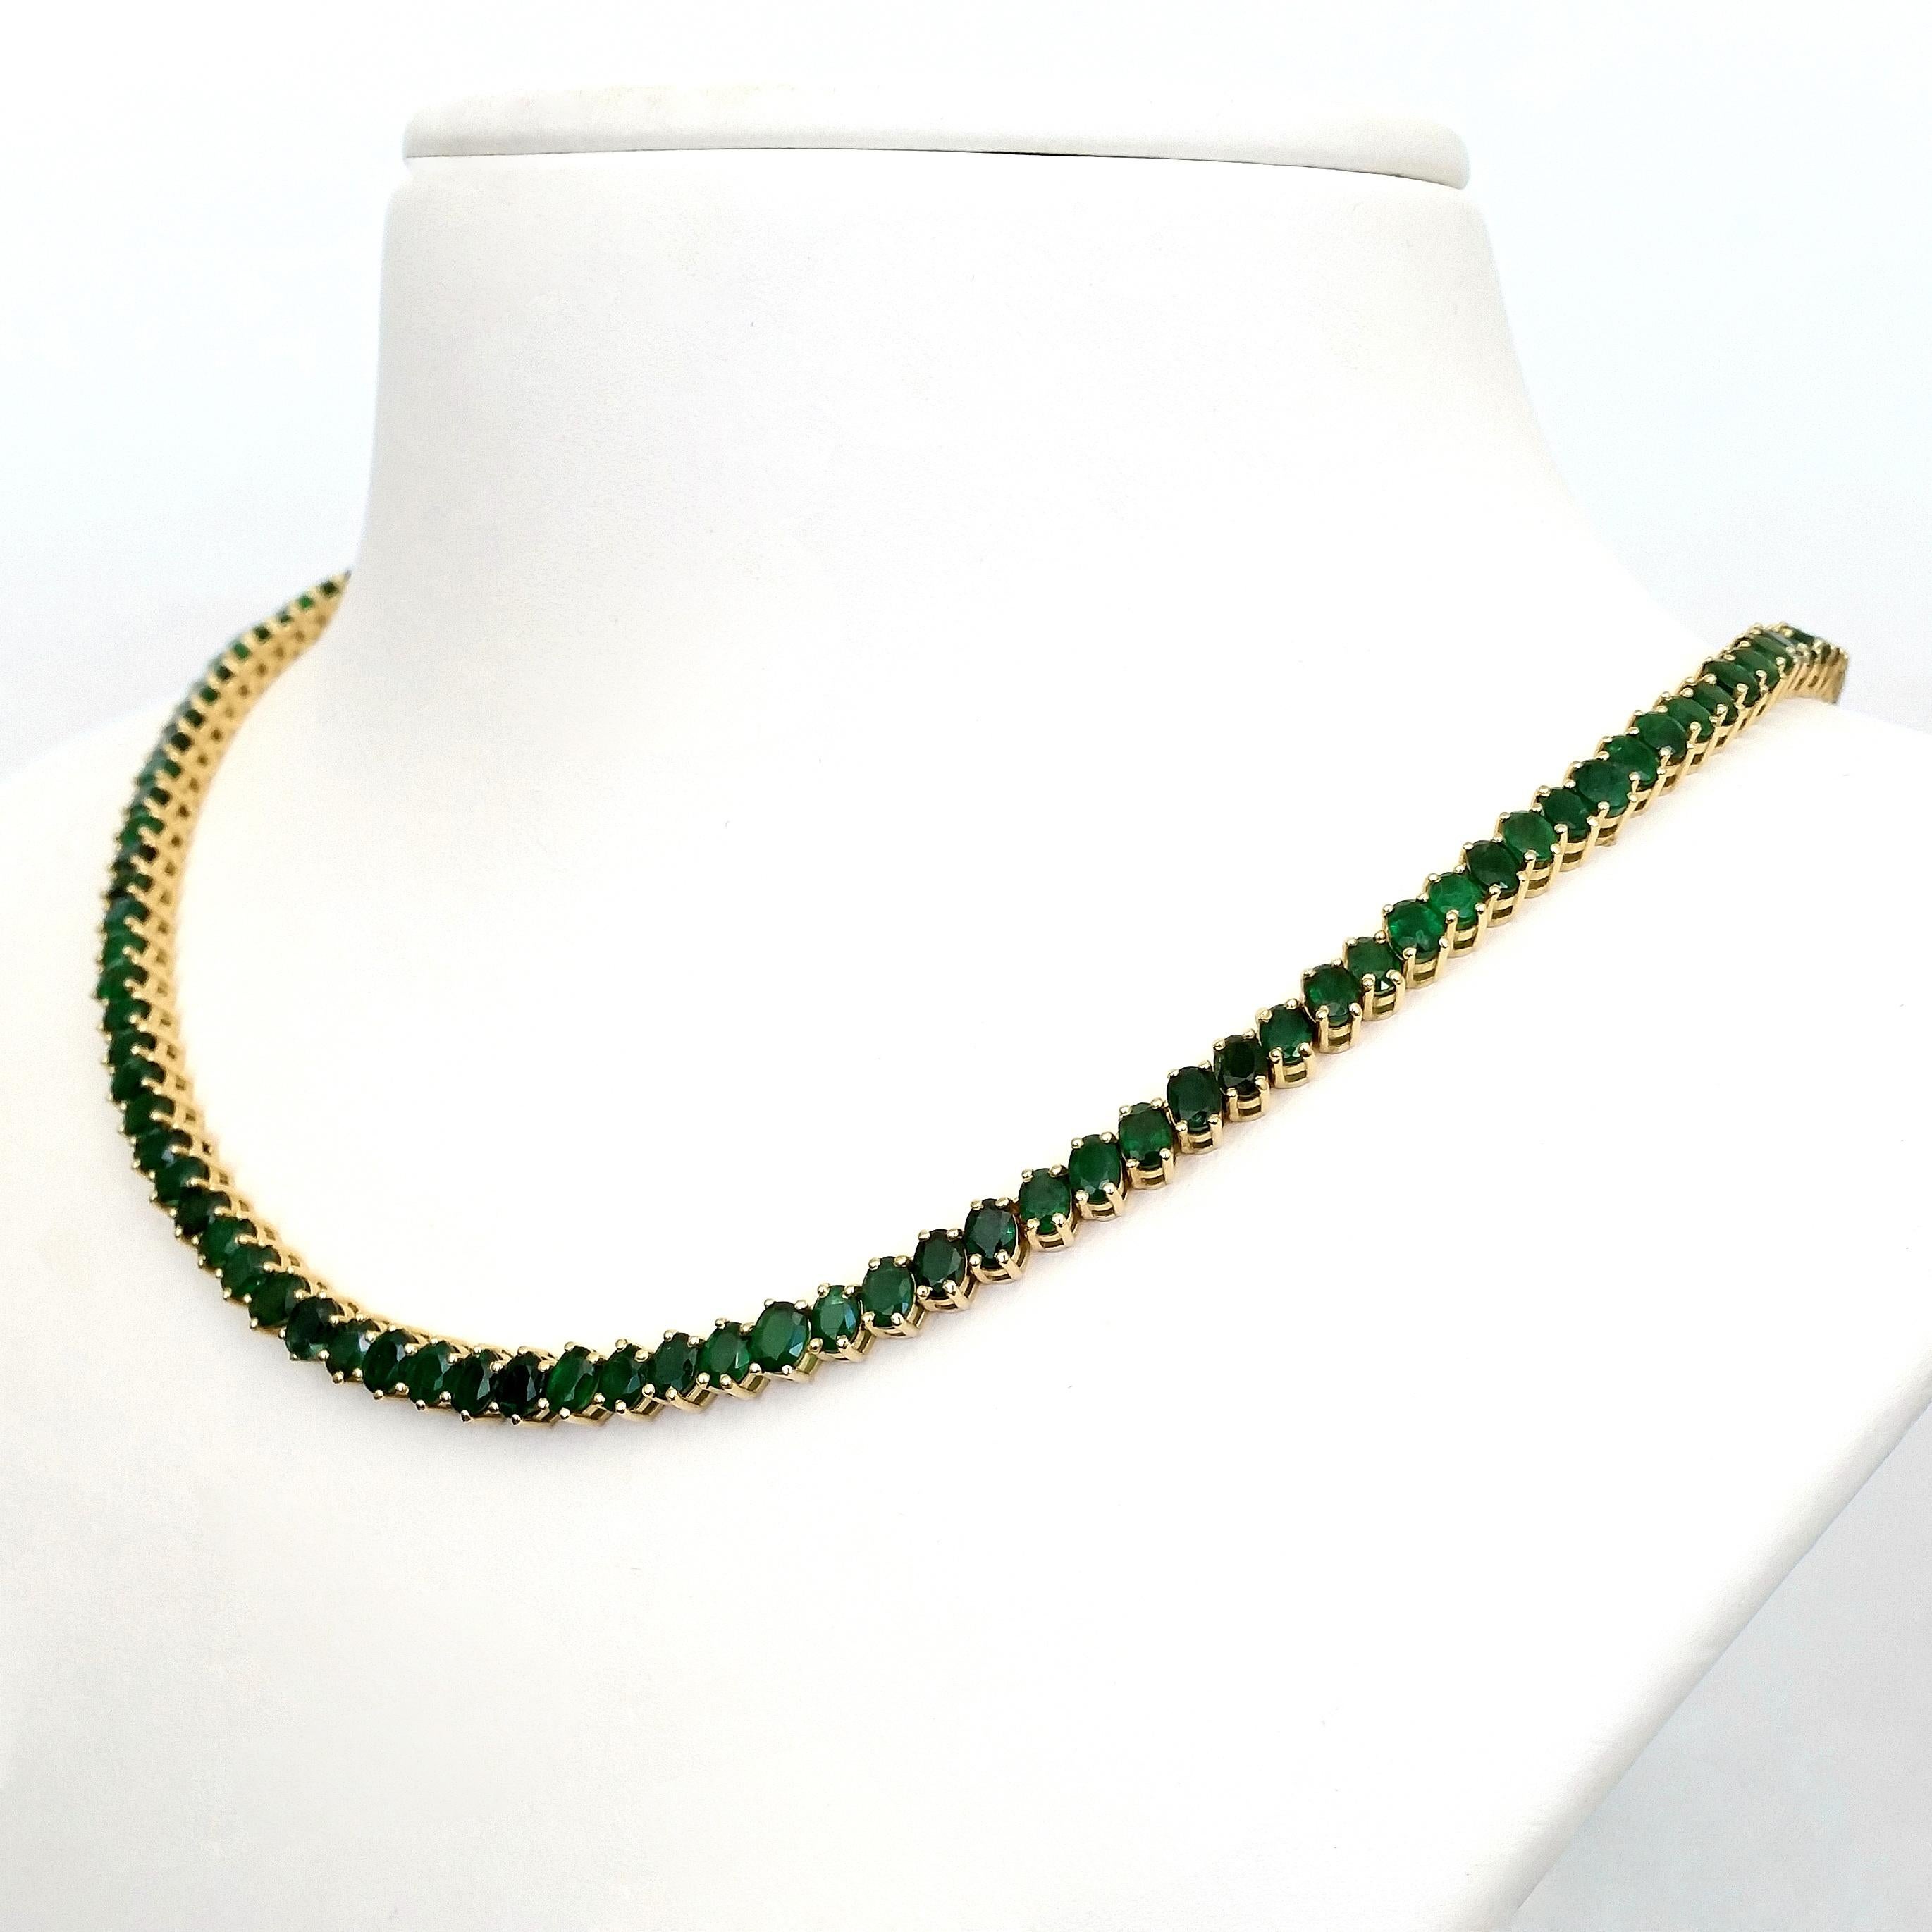 Der Smaragd symbolisiert Wahrheit und Liebe, und diese elegante und attraktive Halskette wird Ihnen das Gefühl geben, geliebt zu werden und wahrhaftig zu sein. Diese einzigartig gestaltete Halskette aus 14-karätigem Gelbgold mit einem Gewicht von